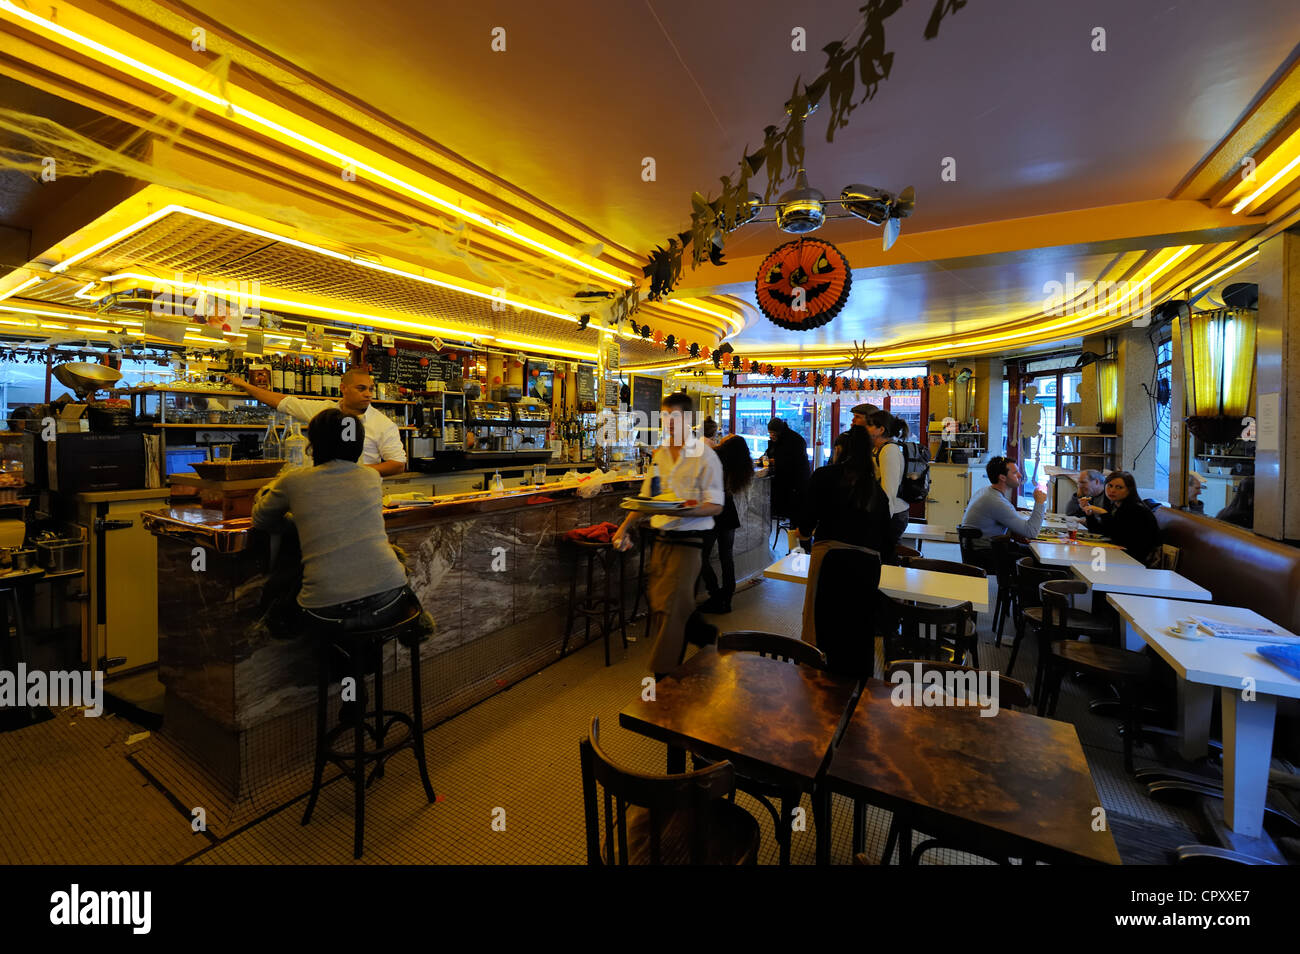 CAFÉ DES DEUX MOULINS - 316 Photos & 185 Reviews - 15 rue Lepic, Paris 18,  Paris, France - Brasseries - Restaurant Reviews - Phone Number - Yelp